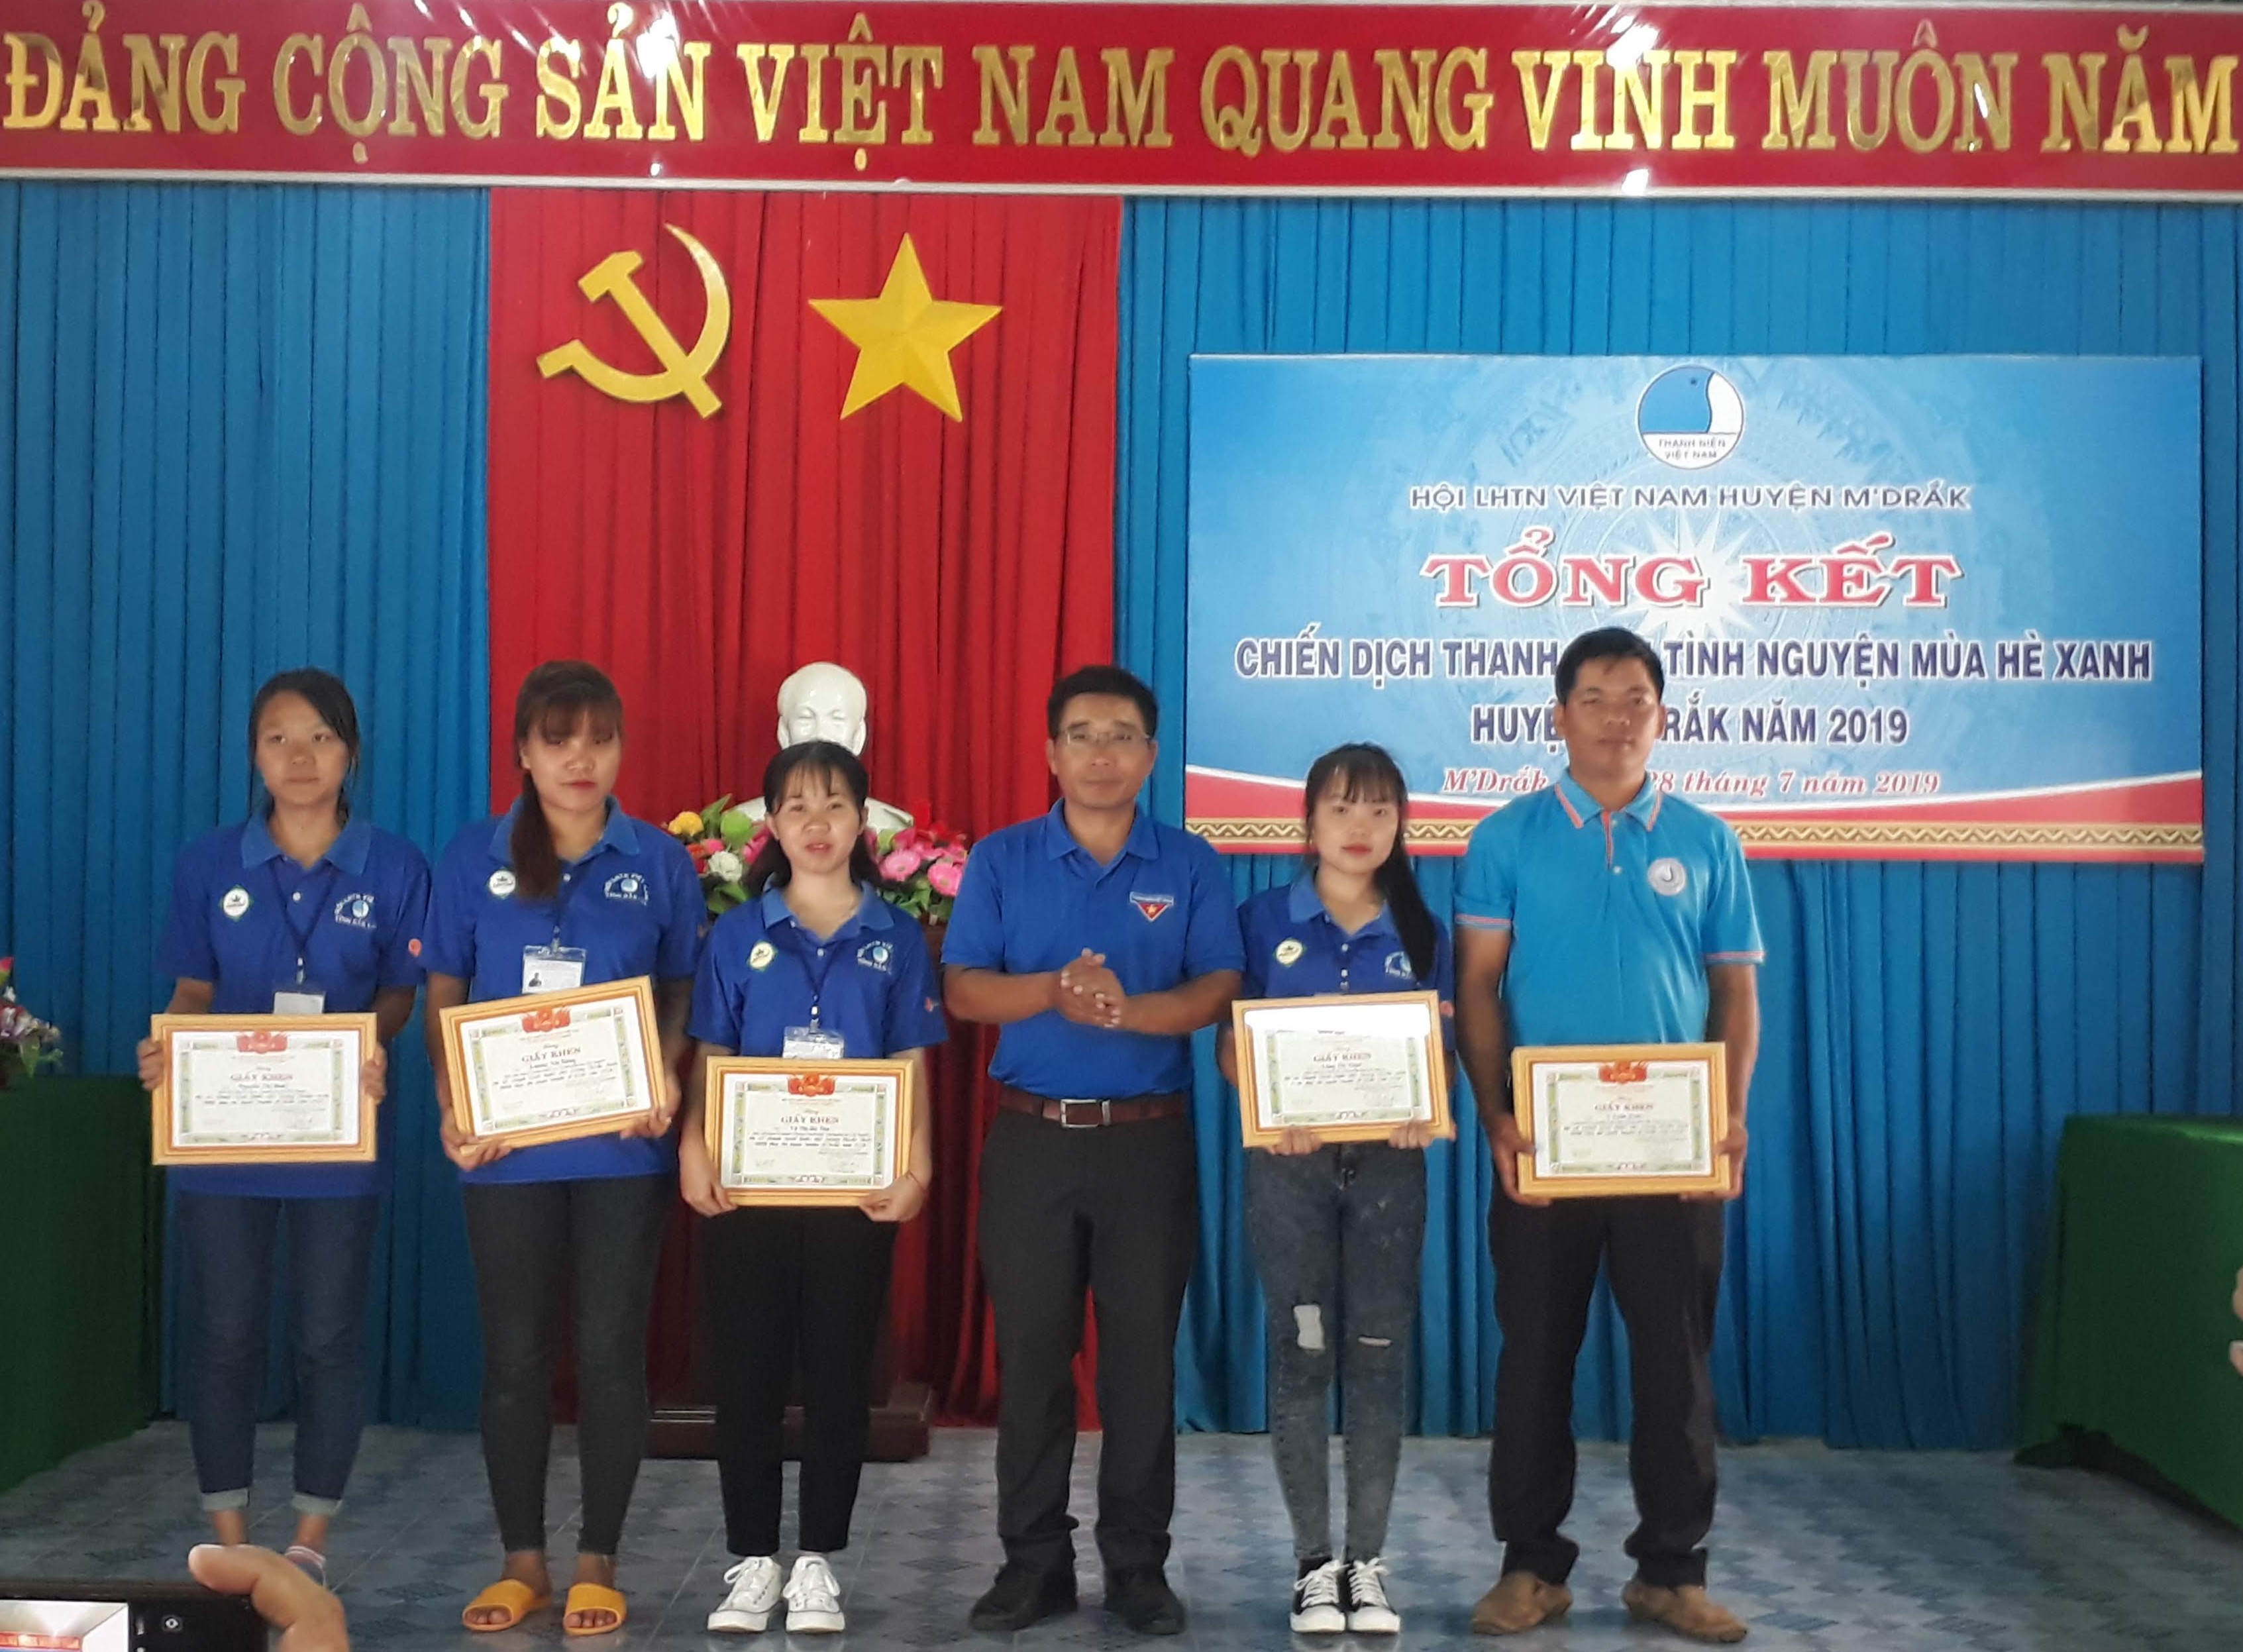 Huyện M’Đrắk tổng kết Chiến dịch Thanh niên tình nguyện mùa hè xanh năm 2019